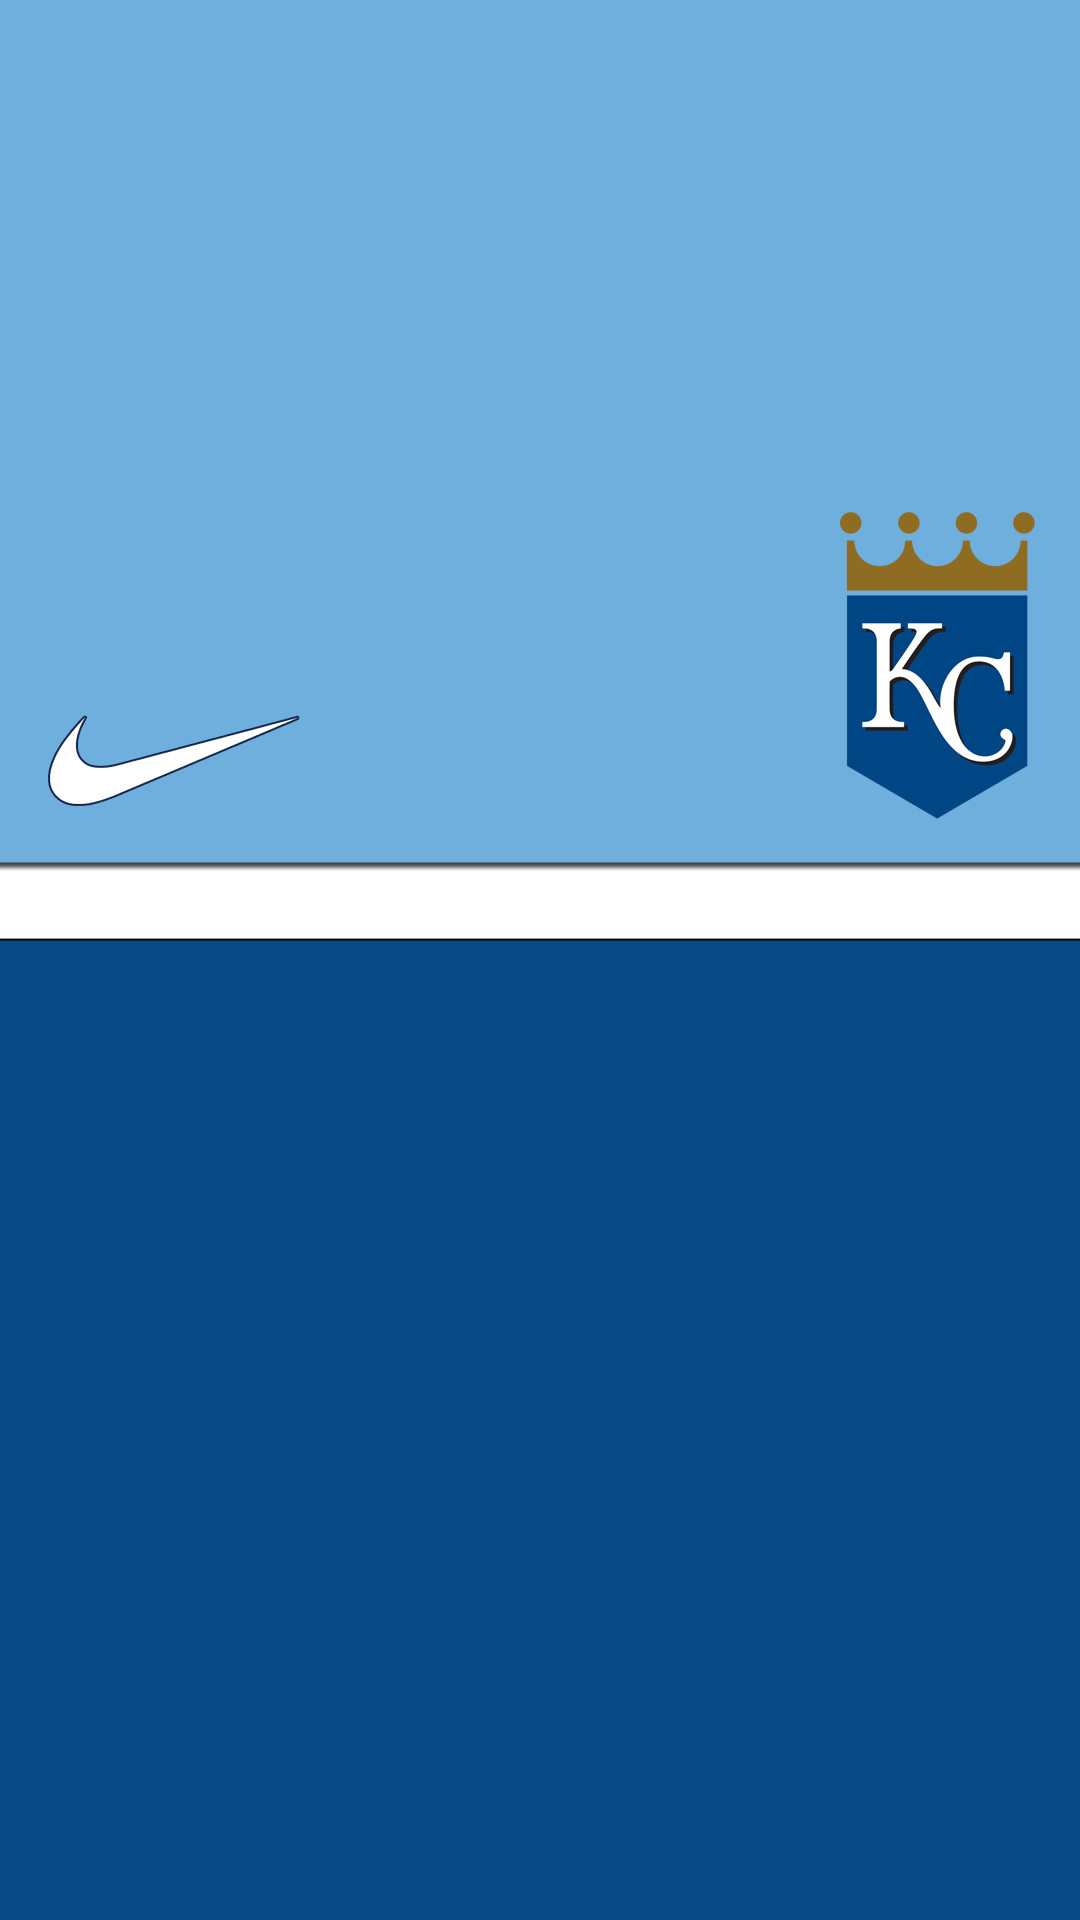 1080x1920 Kansas City Royals Baseball Team Stadium wallpaper http://deskbg .